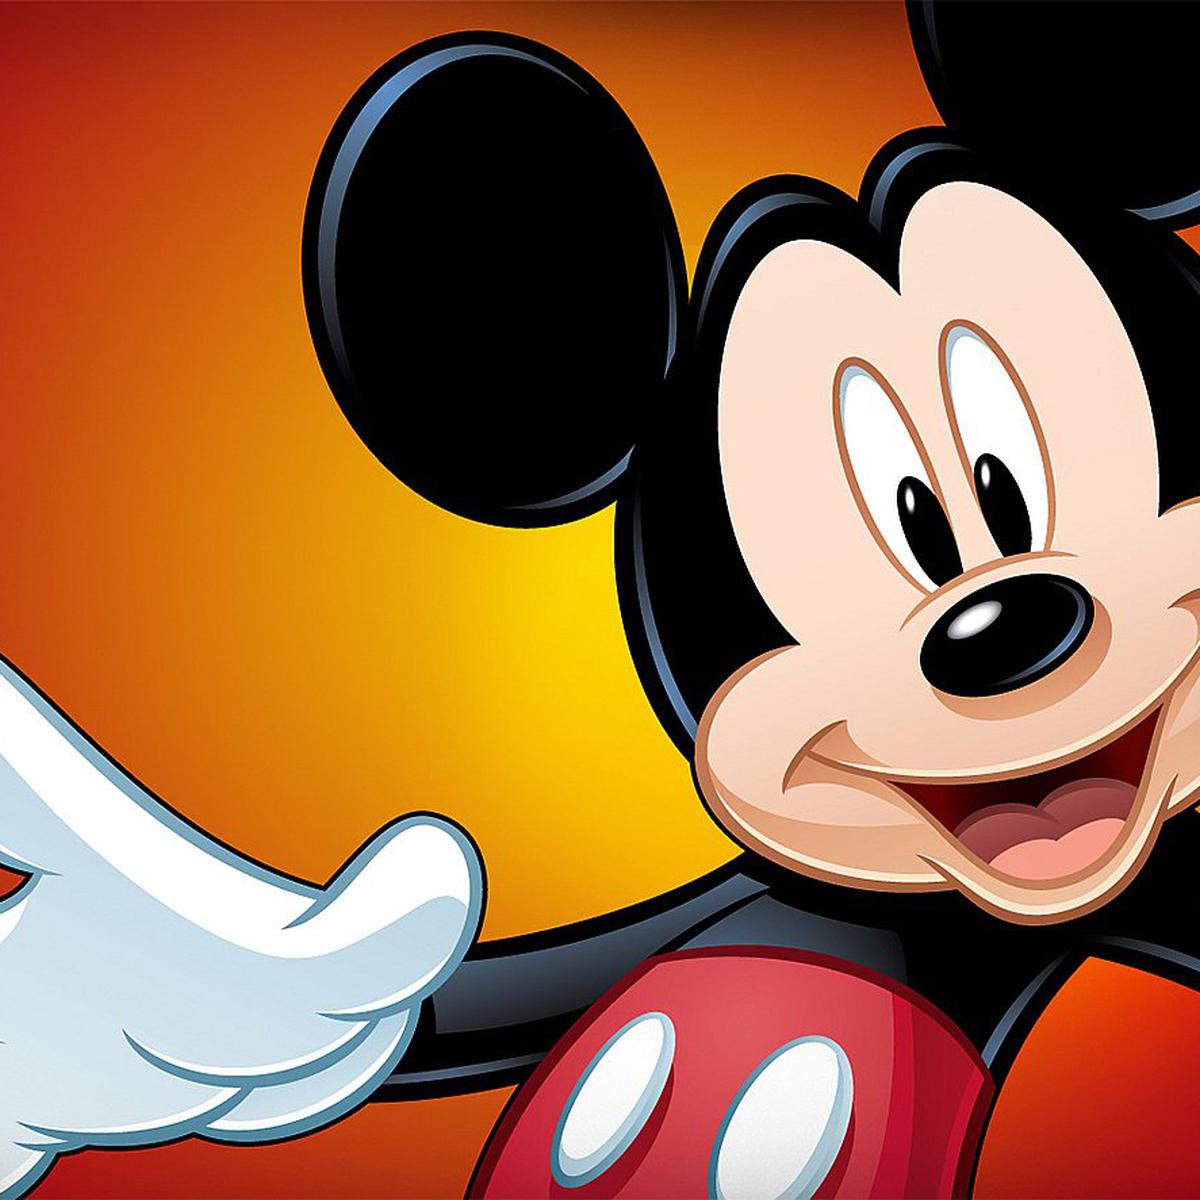 FELIZCUMPLEMICKEY Disney celebrarán el cumpleaños de Mickey Mouse con  programación especial